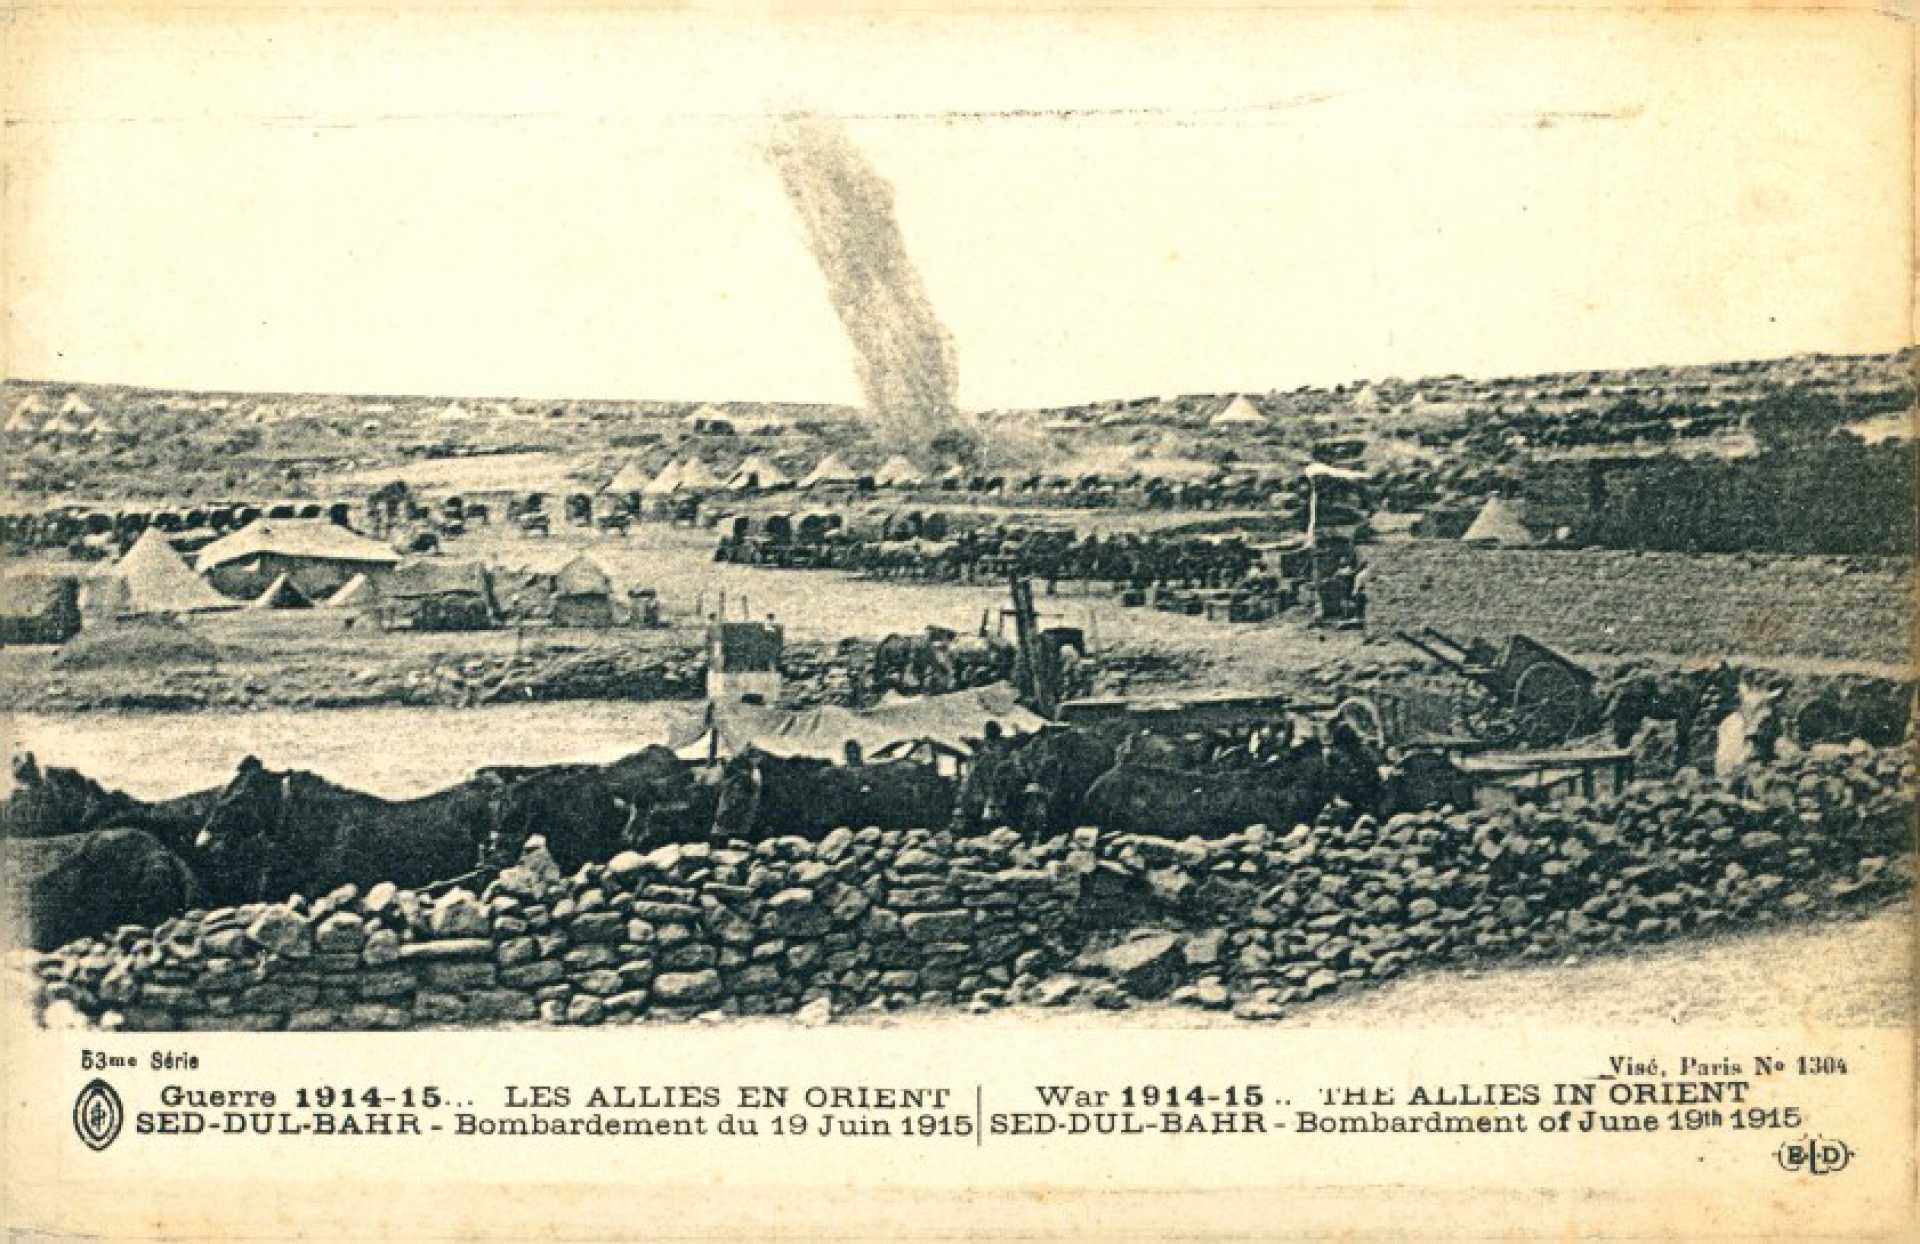 Guerre 1914-15… Les Allies en orient Sed-Dul-Bahr – Bombardement du 19 Juin 1915